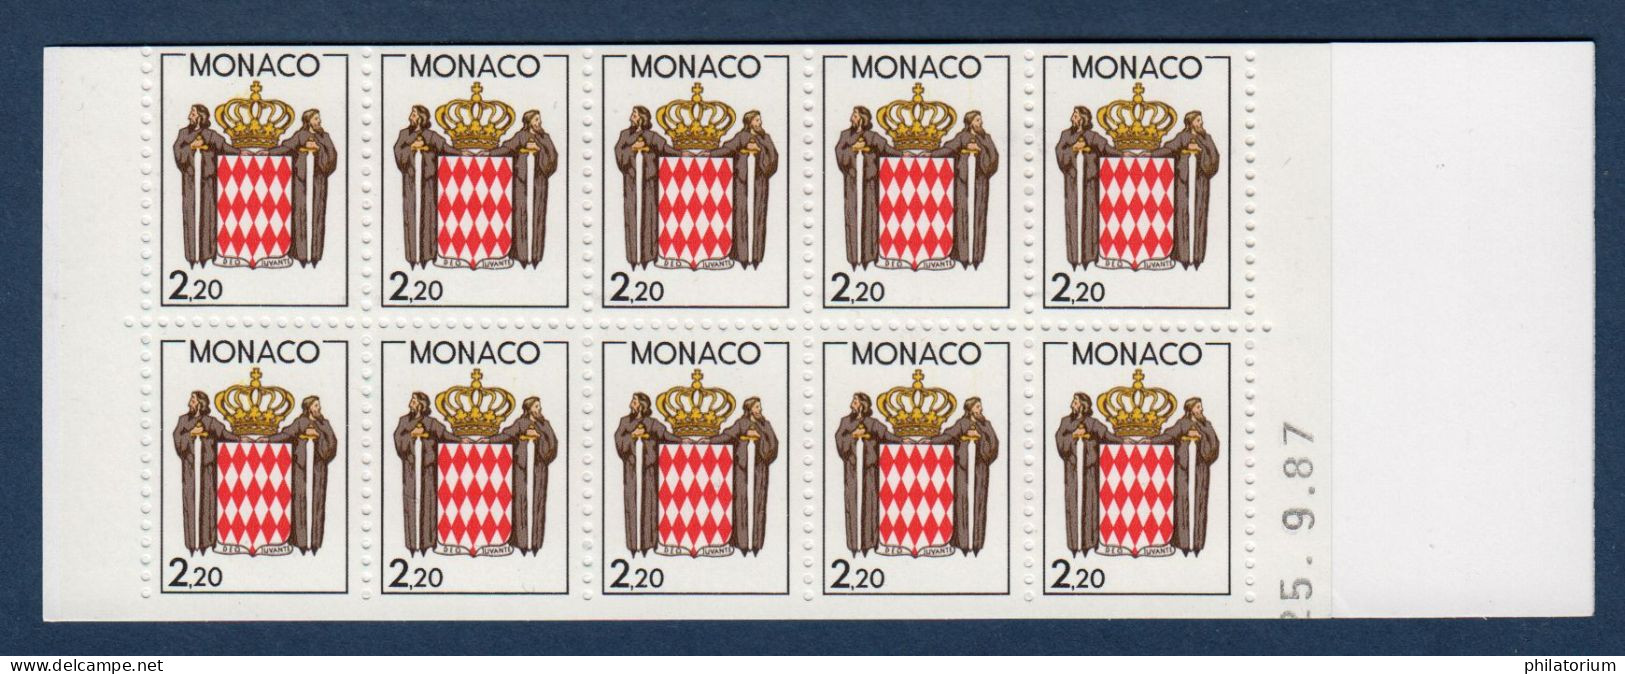 Monaco Timbre Neuf, Yv 1613, Carnet Usage Courant Non Plié, Daté 25.9.87, - Booklets